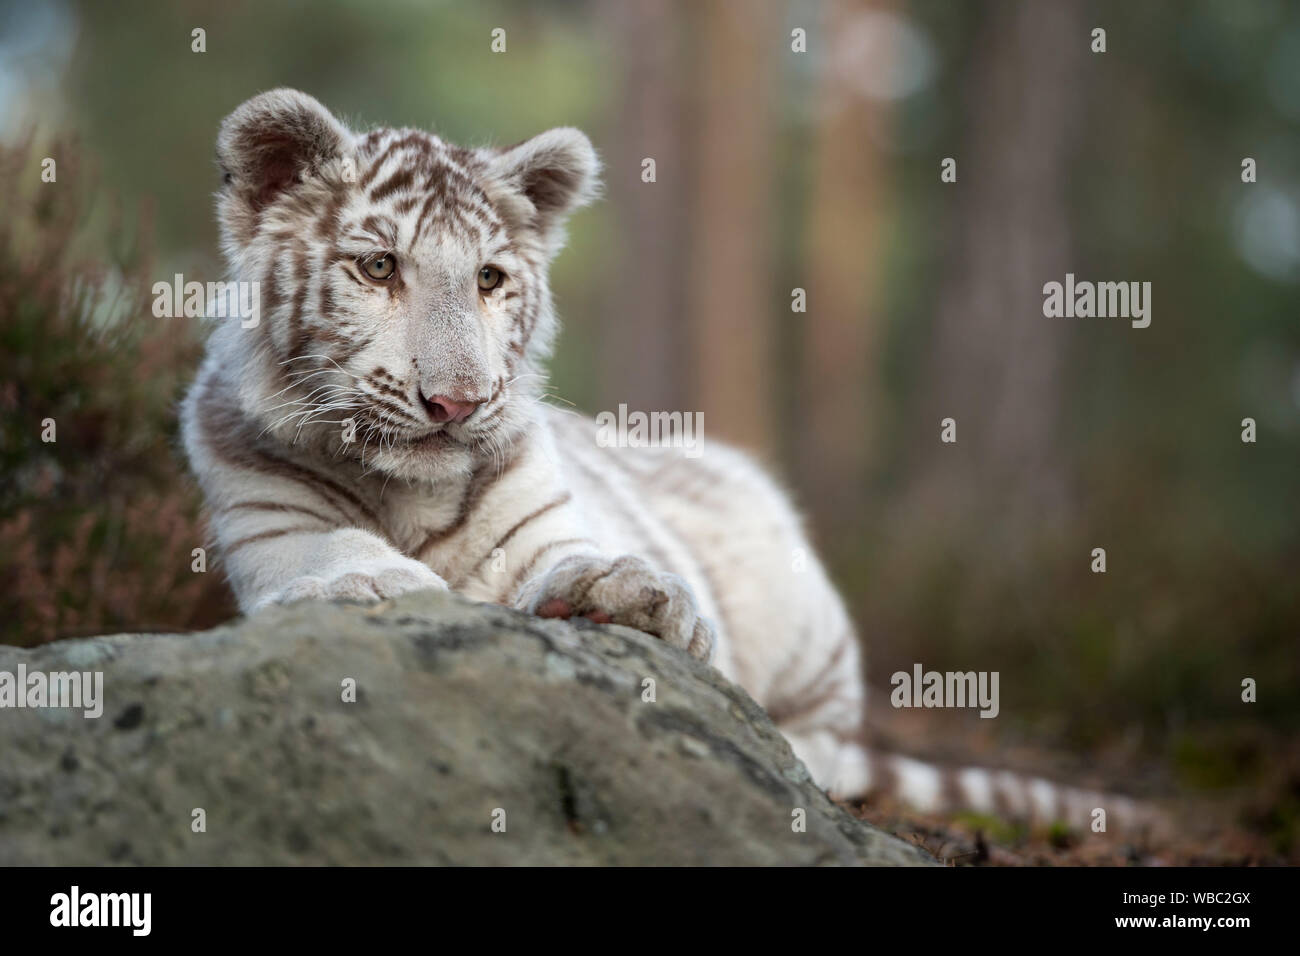 Bengal Tiger/Koenigstiger (Panthera tigris), jungen Cub, weiß leucistic Morph, liegen auf Felsen, Ausruhen, schauen Sie sich um, sieht nett und lustig. Stockfoto